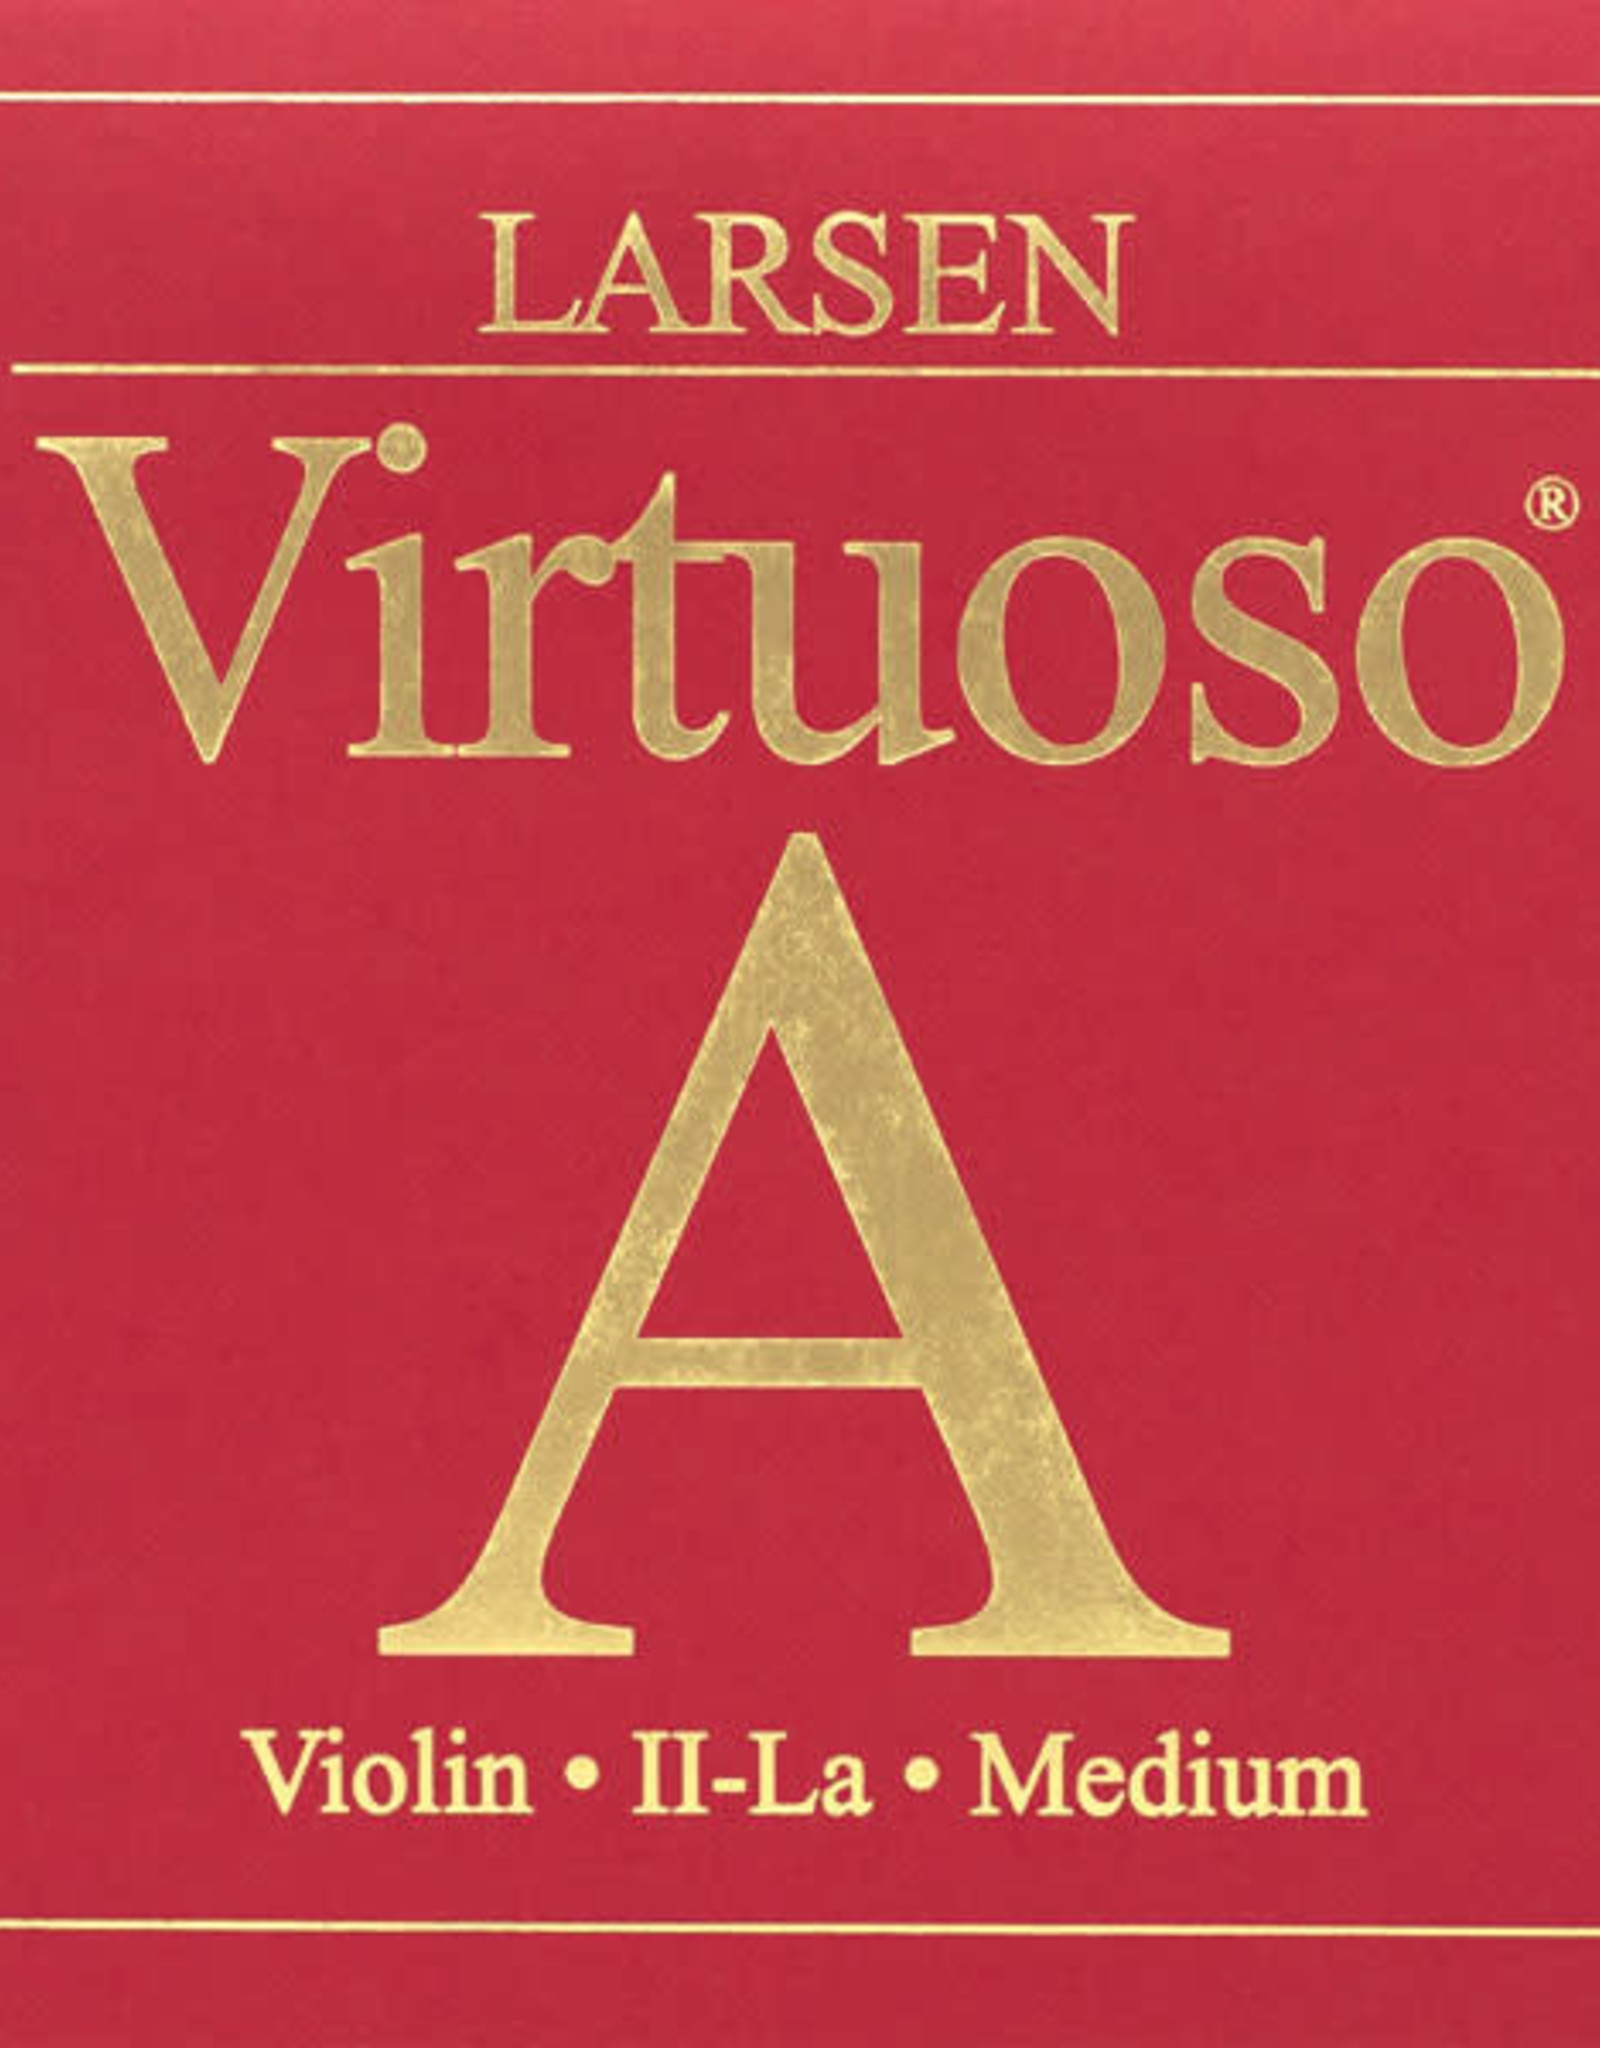 LARSEN Virtuoso vioolsnaar, la (a-2)